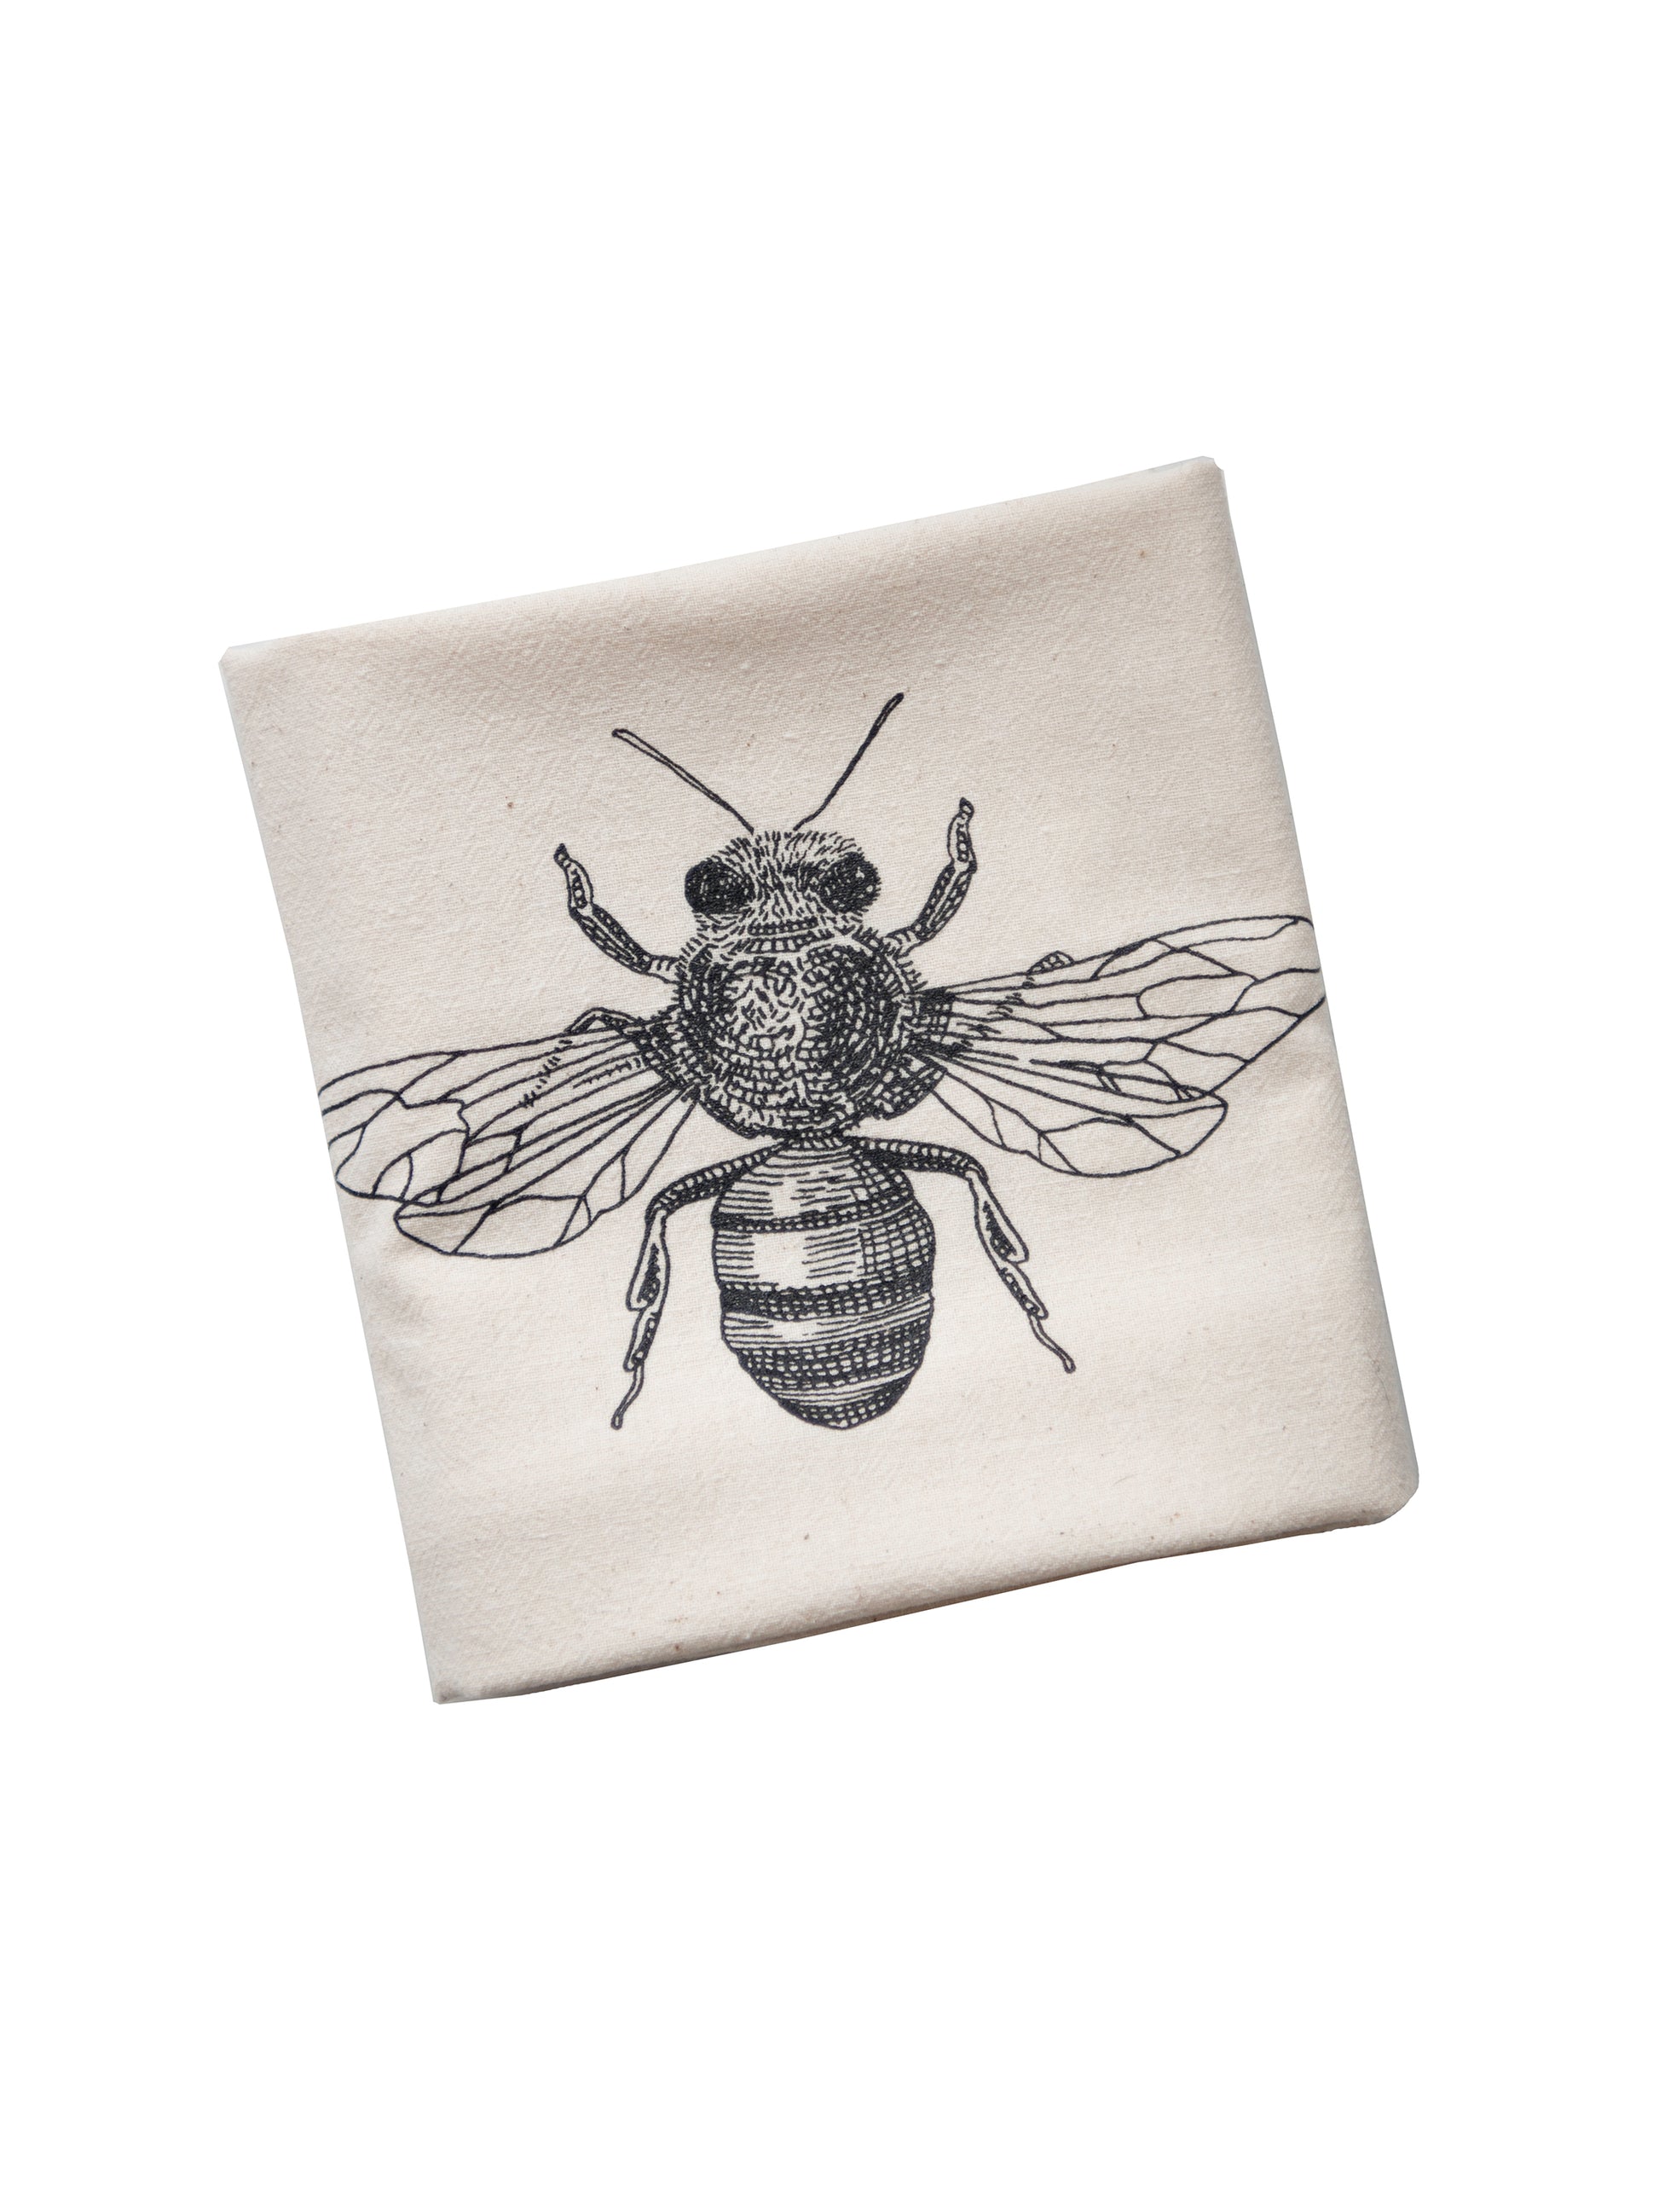 flour sack towel {serviette} - The Vintage Bee Company